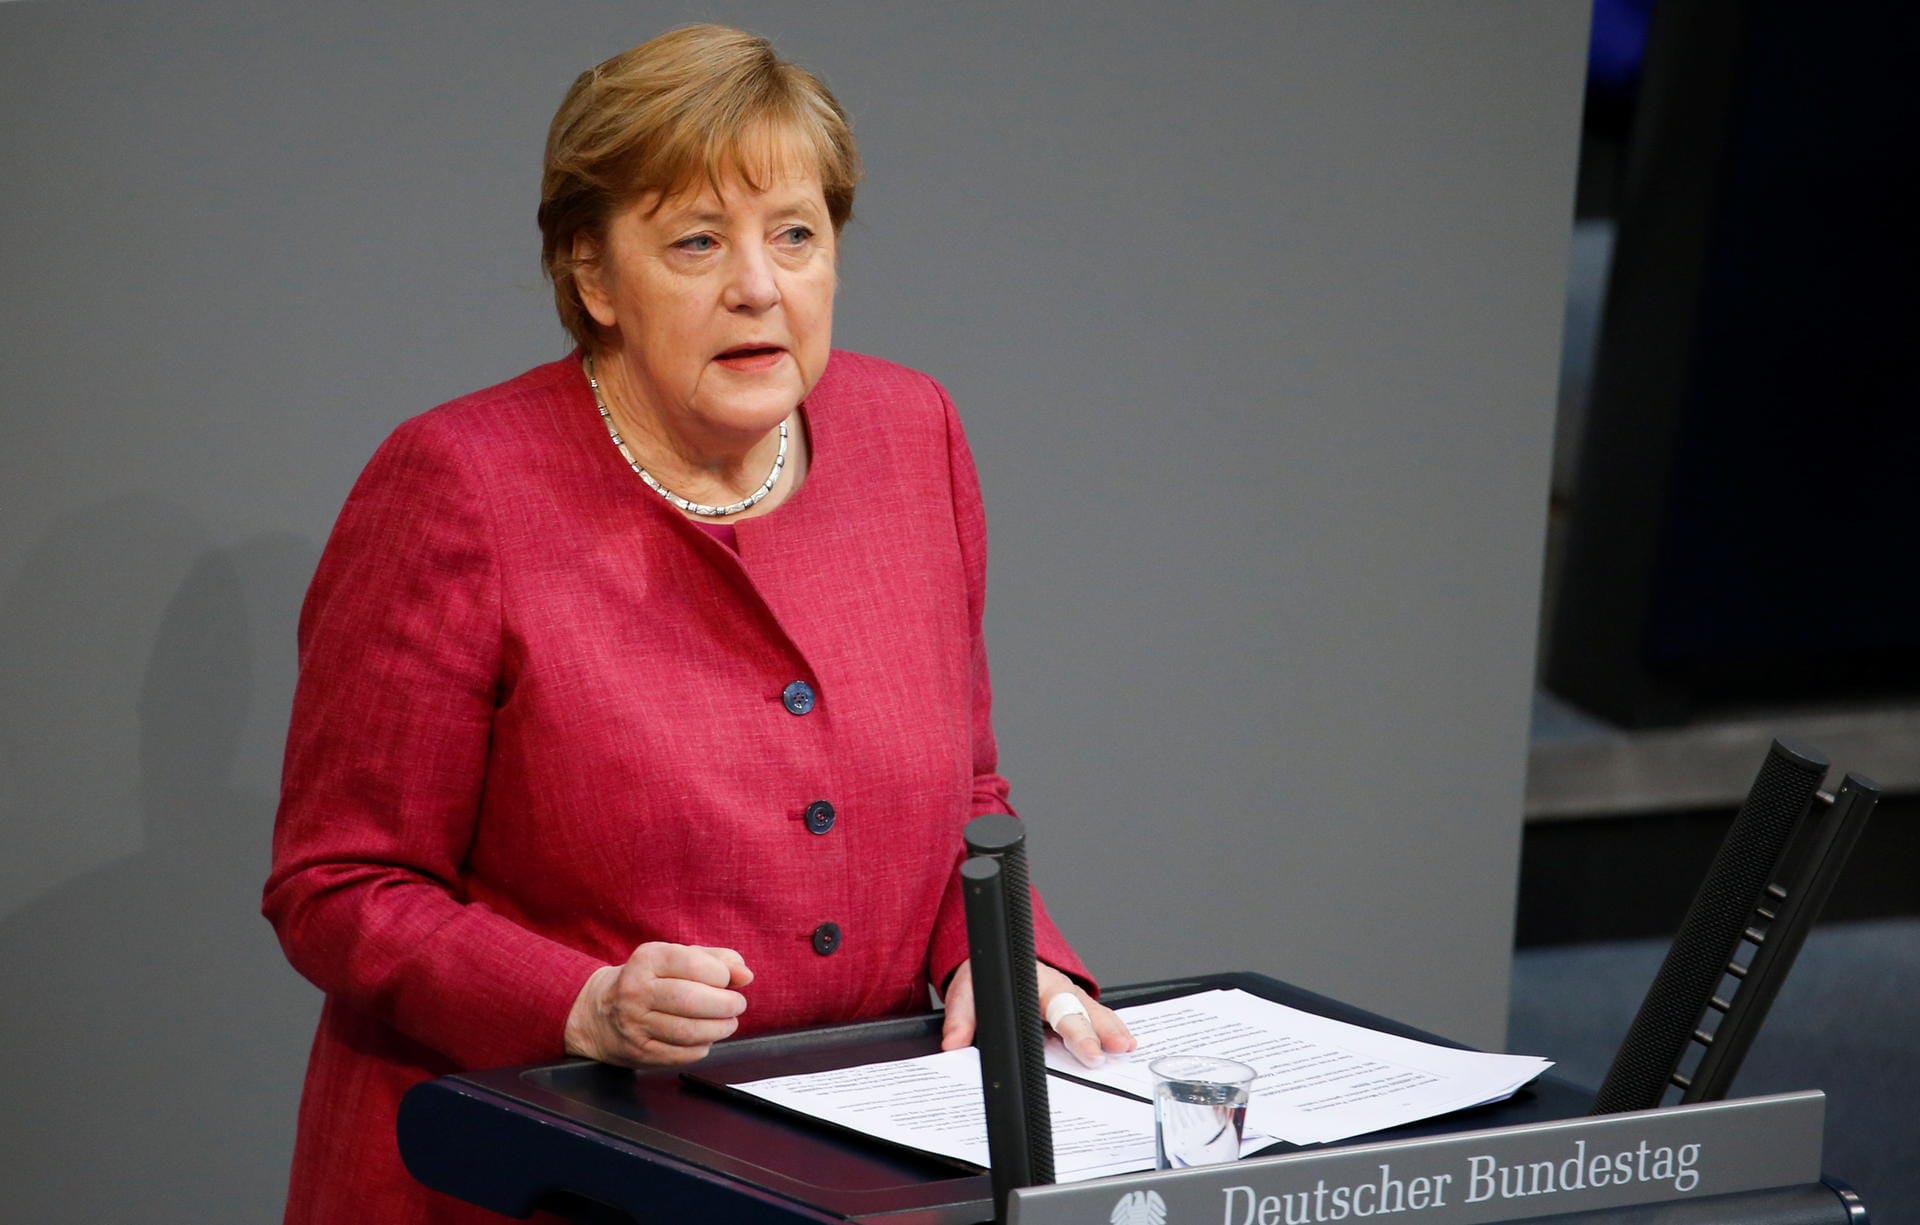 Angela Merkel: Die 66-jährige Bundeskanzlerin wurde am 16. April 2021 mit dem Astrazeneca-Impfstoff geimpft.